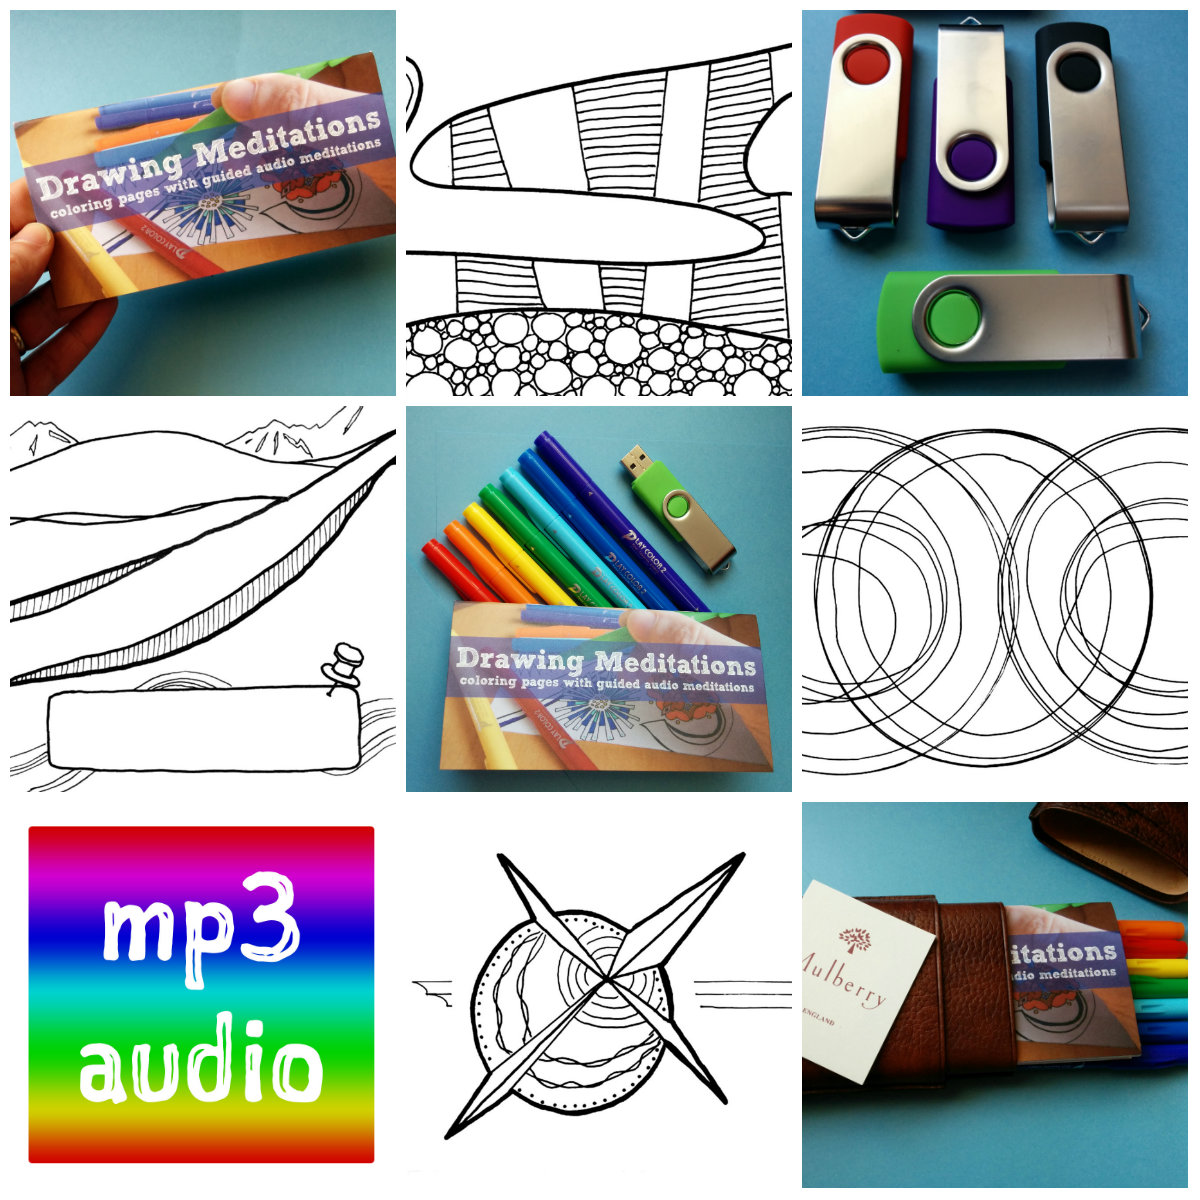 https://mt.mediatinker.com/blog/2015-product-collage.jpg